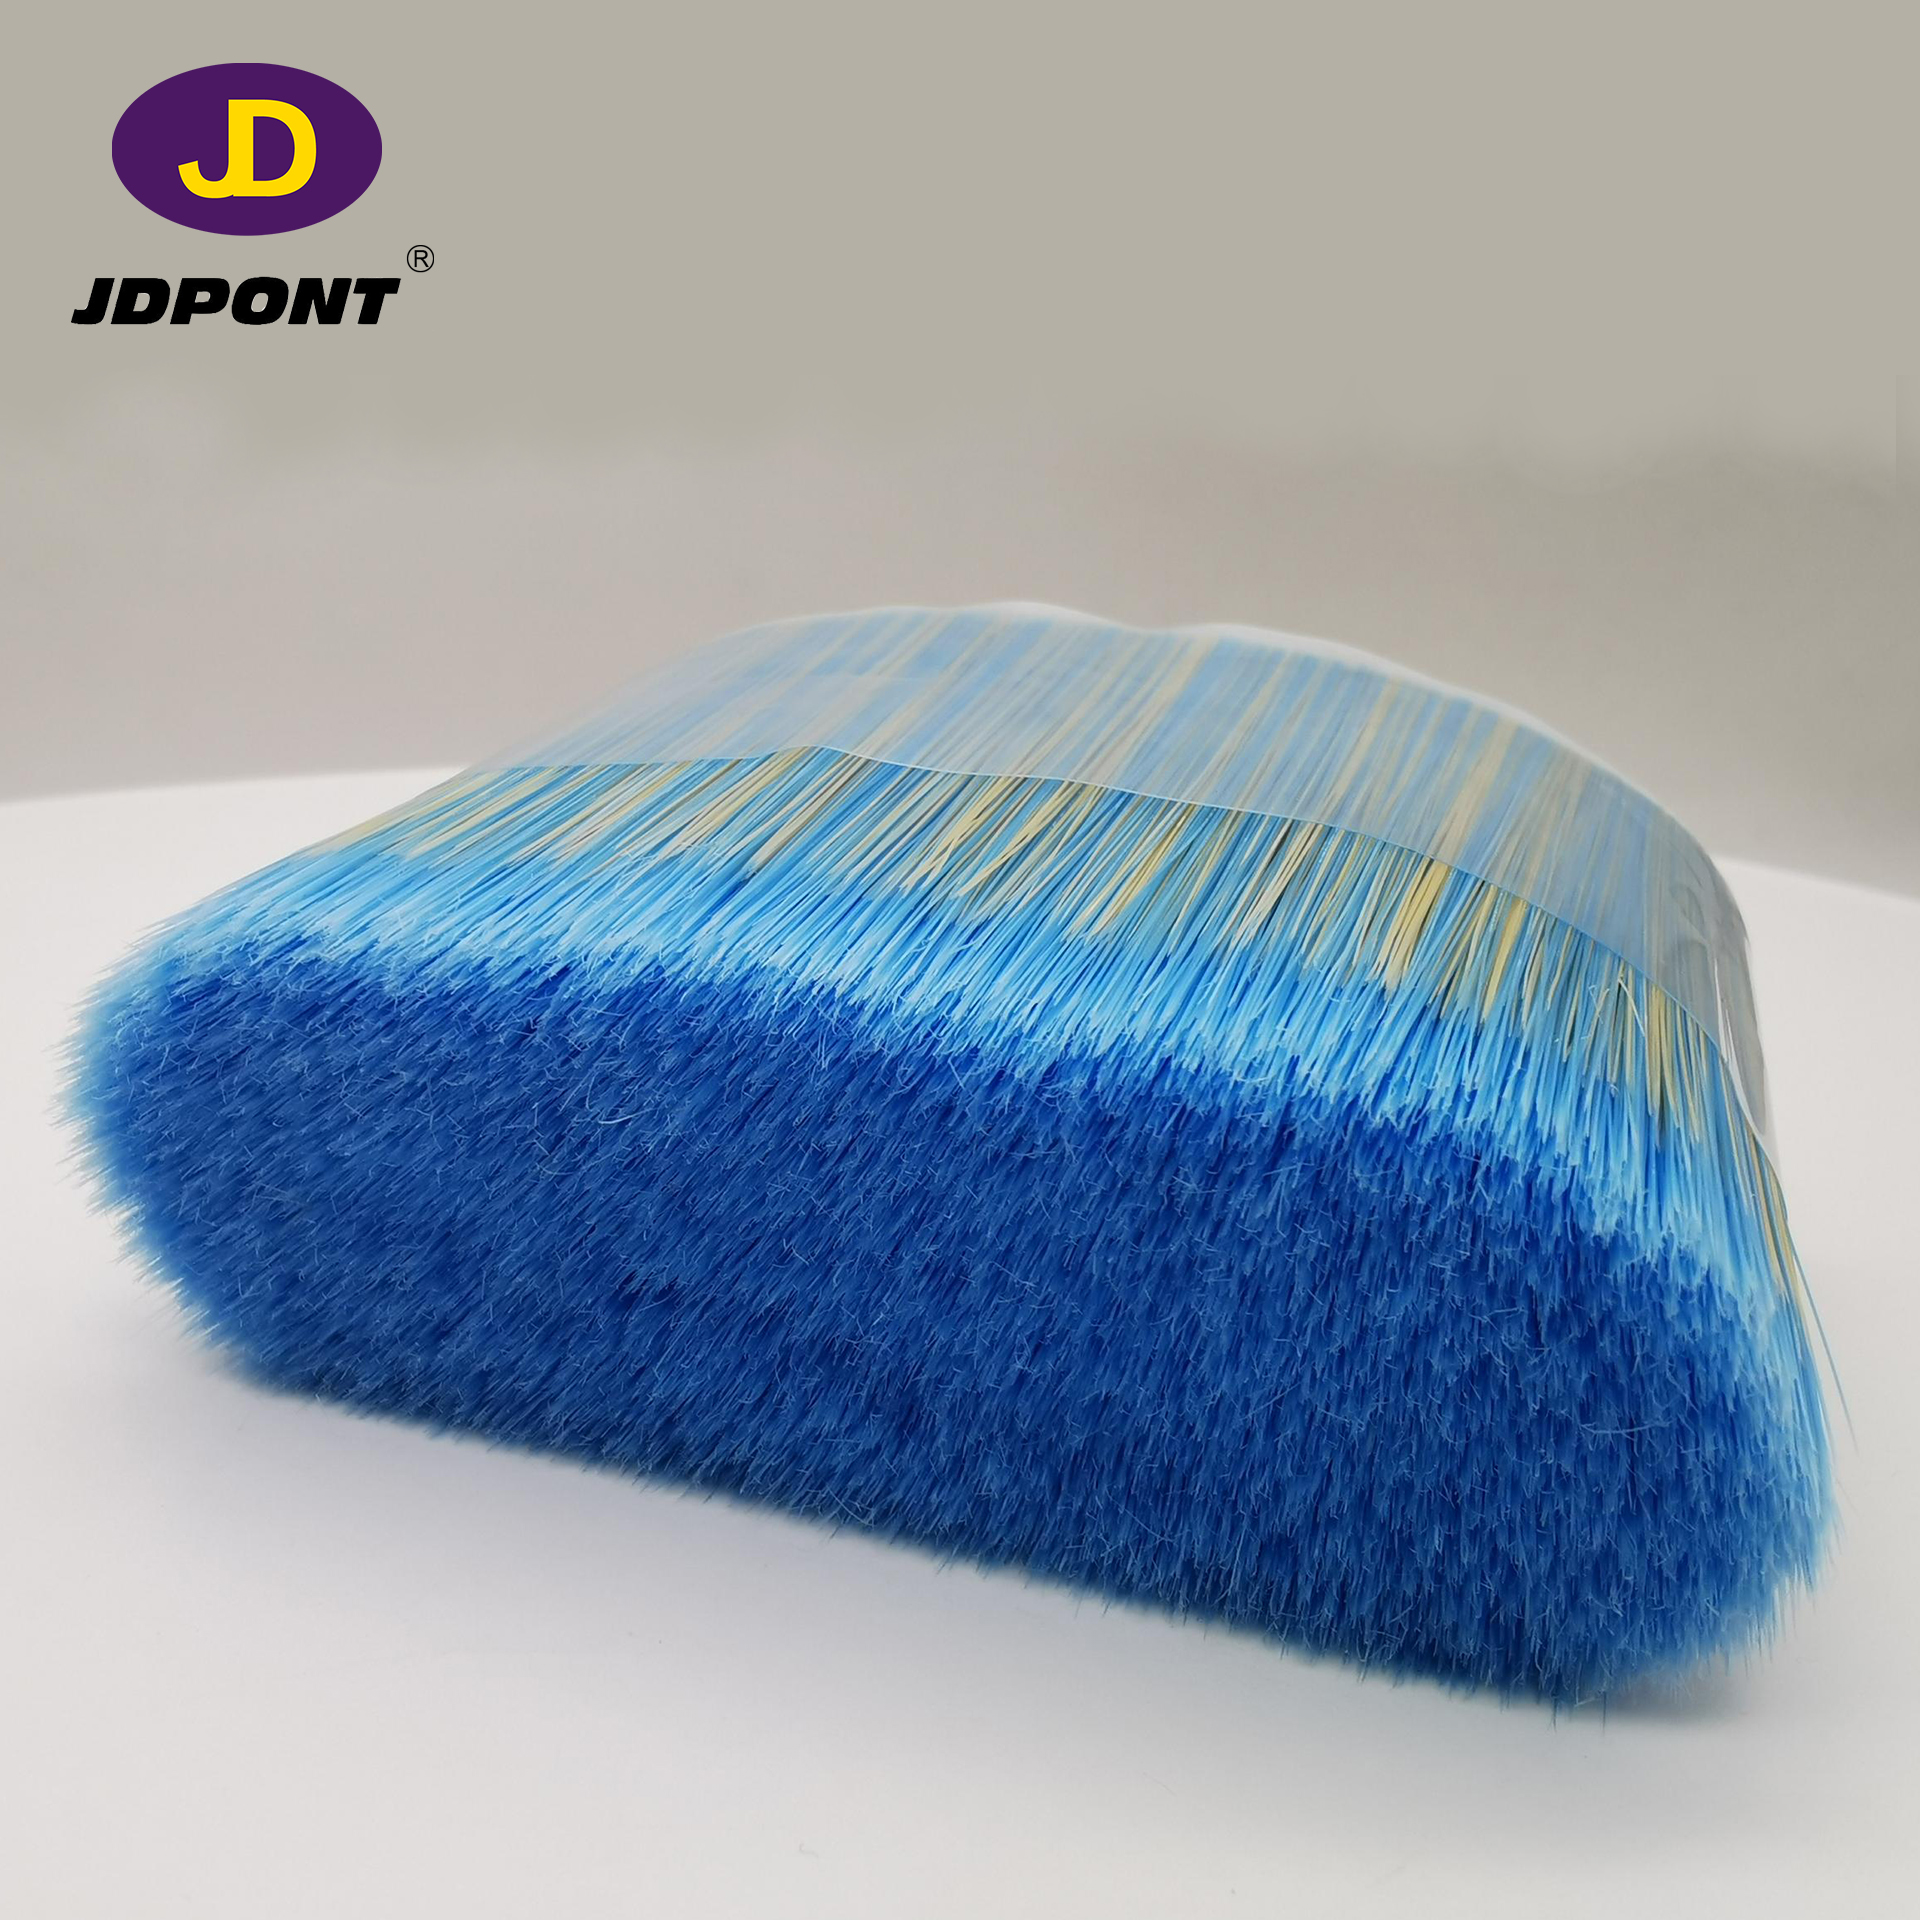 Blue Mixture White Bristle Color Paint Brush Filament for Brush -------JDFM020